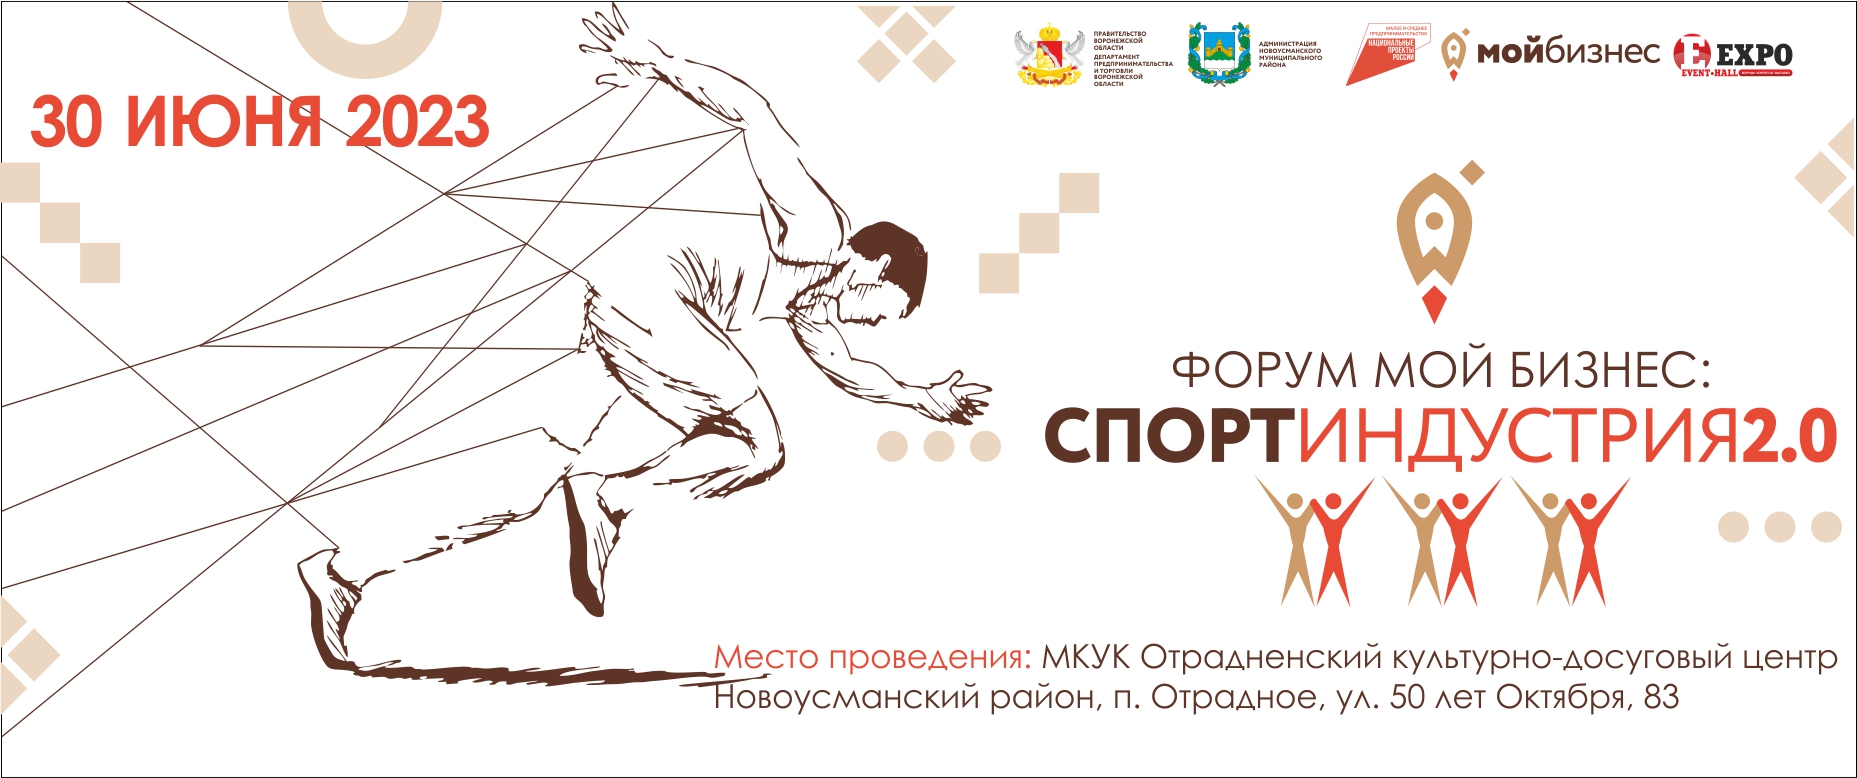 30 июня в Отрадненском культурно-досуговом Центре состоится региональный форум «Мой бизнес: Спортиндустрия 2.0».